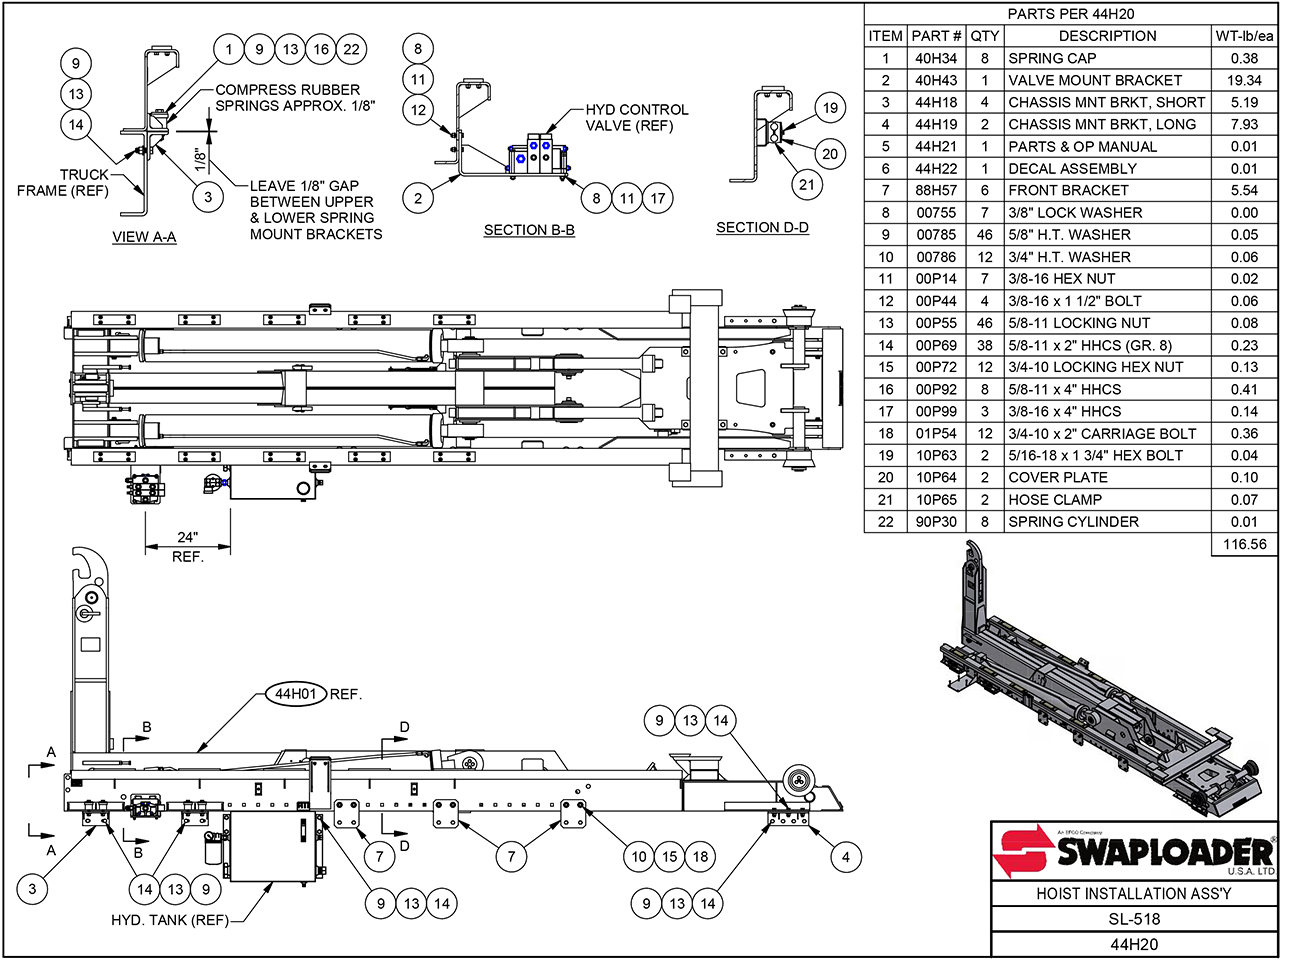 SL-518 Hoist Installation Assembly Diagram